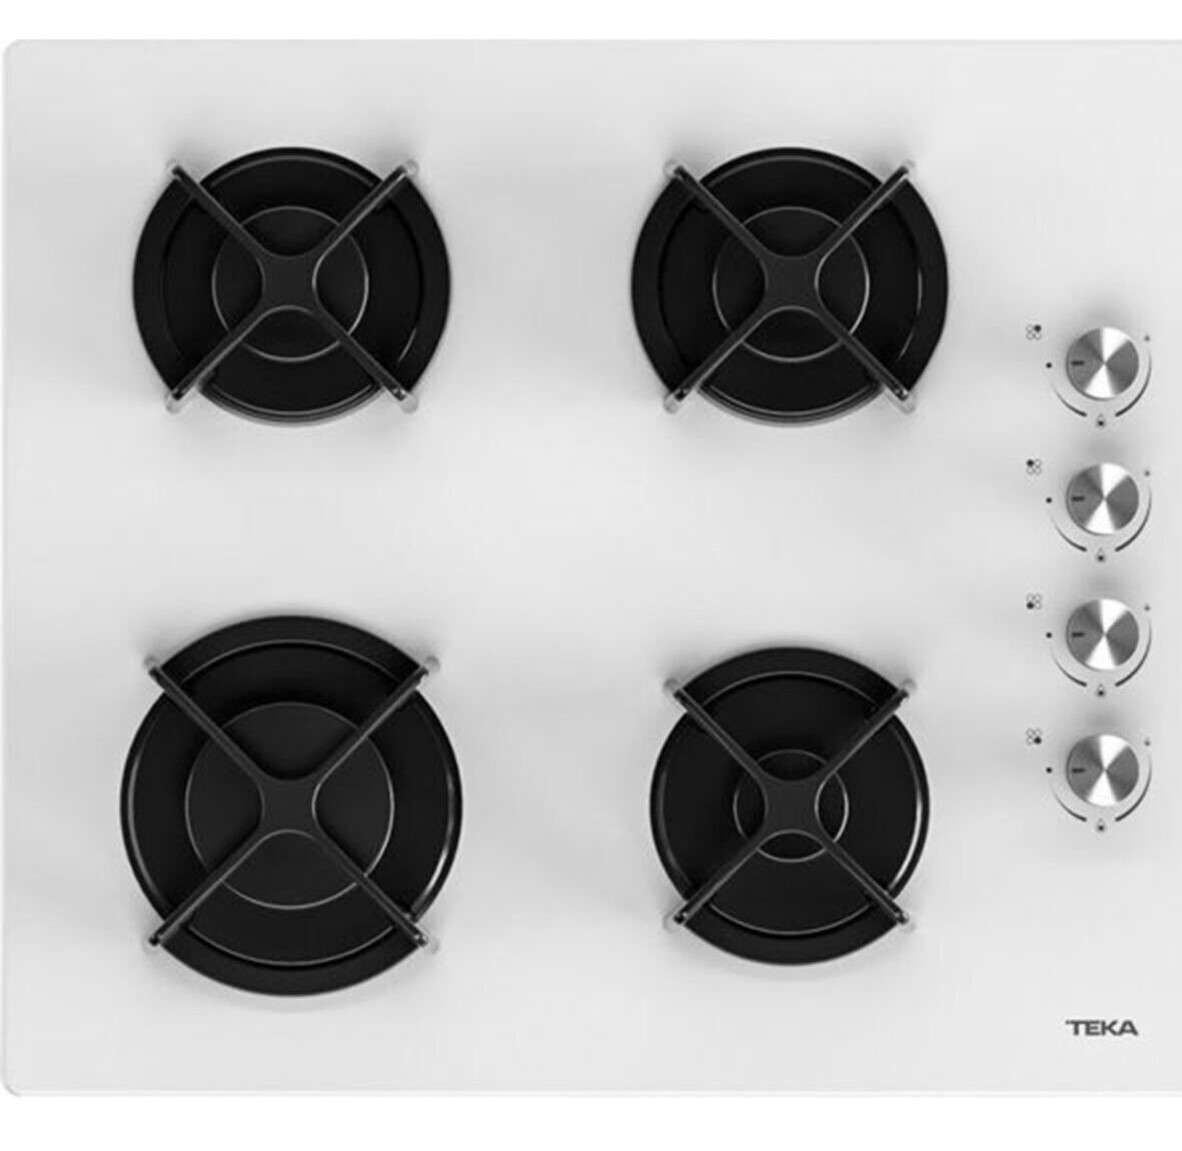 Teka Chef 6 Beyaz Ankastre Set - HAK 625 WH Fırın / HL LUX 60 Ocak/ ATV 60 Davlumbaz